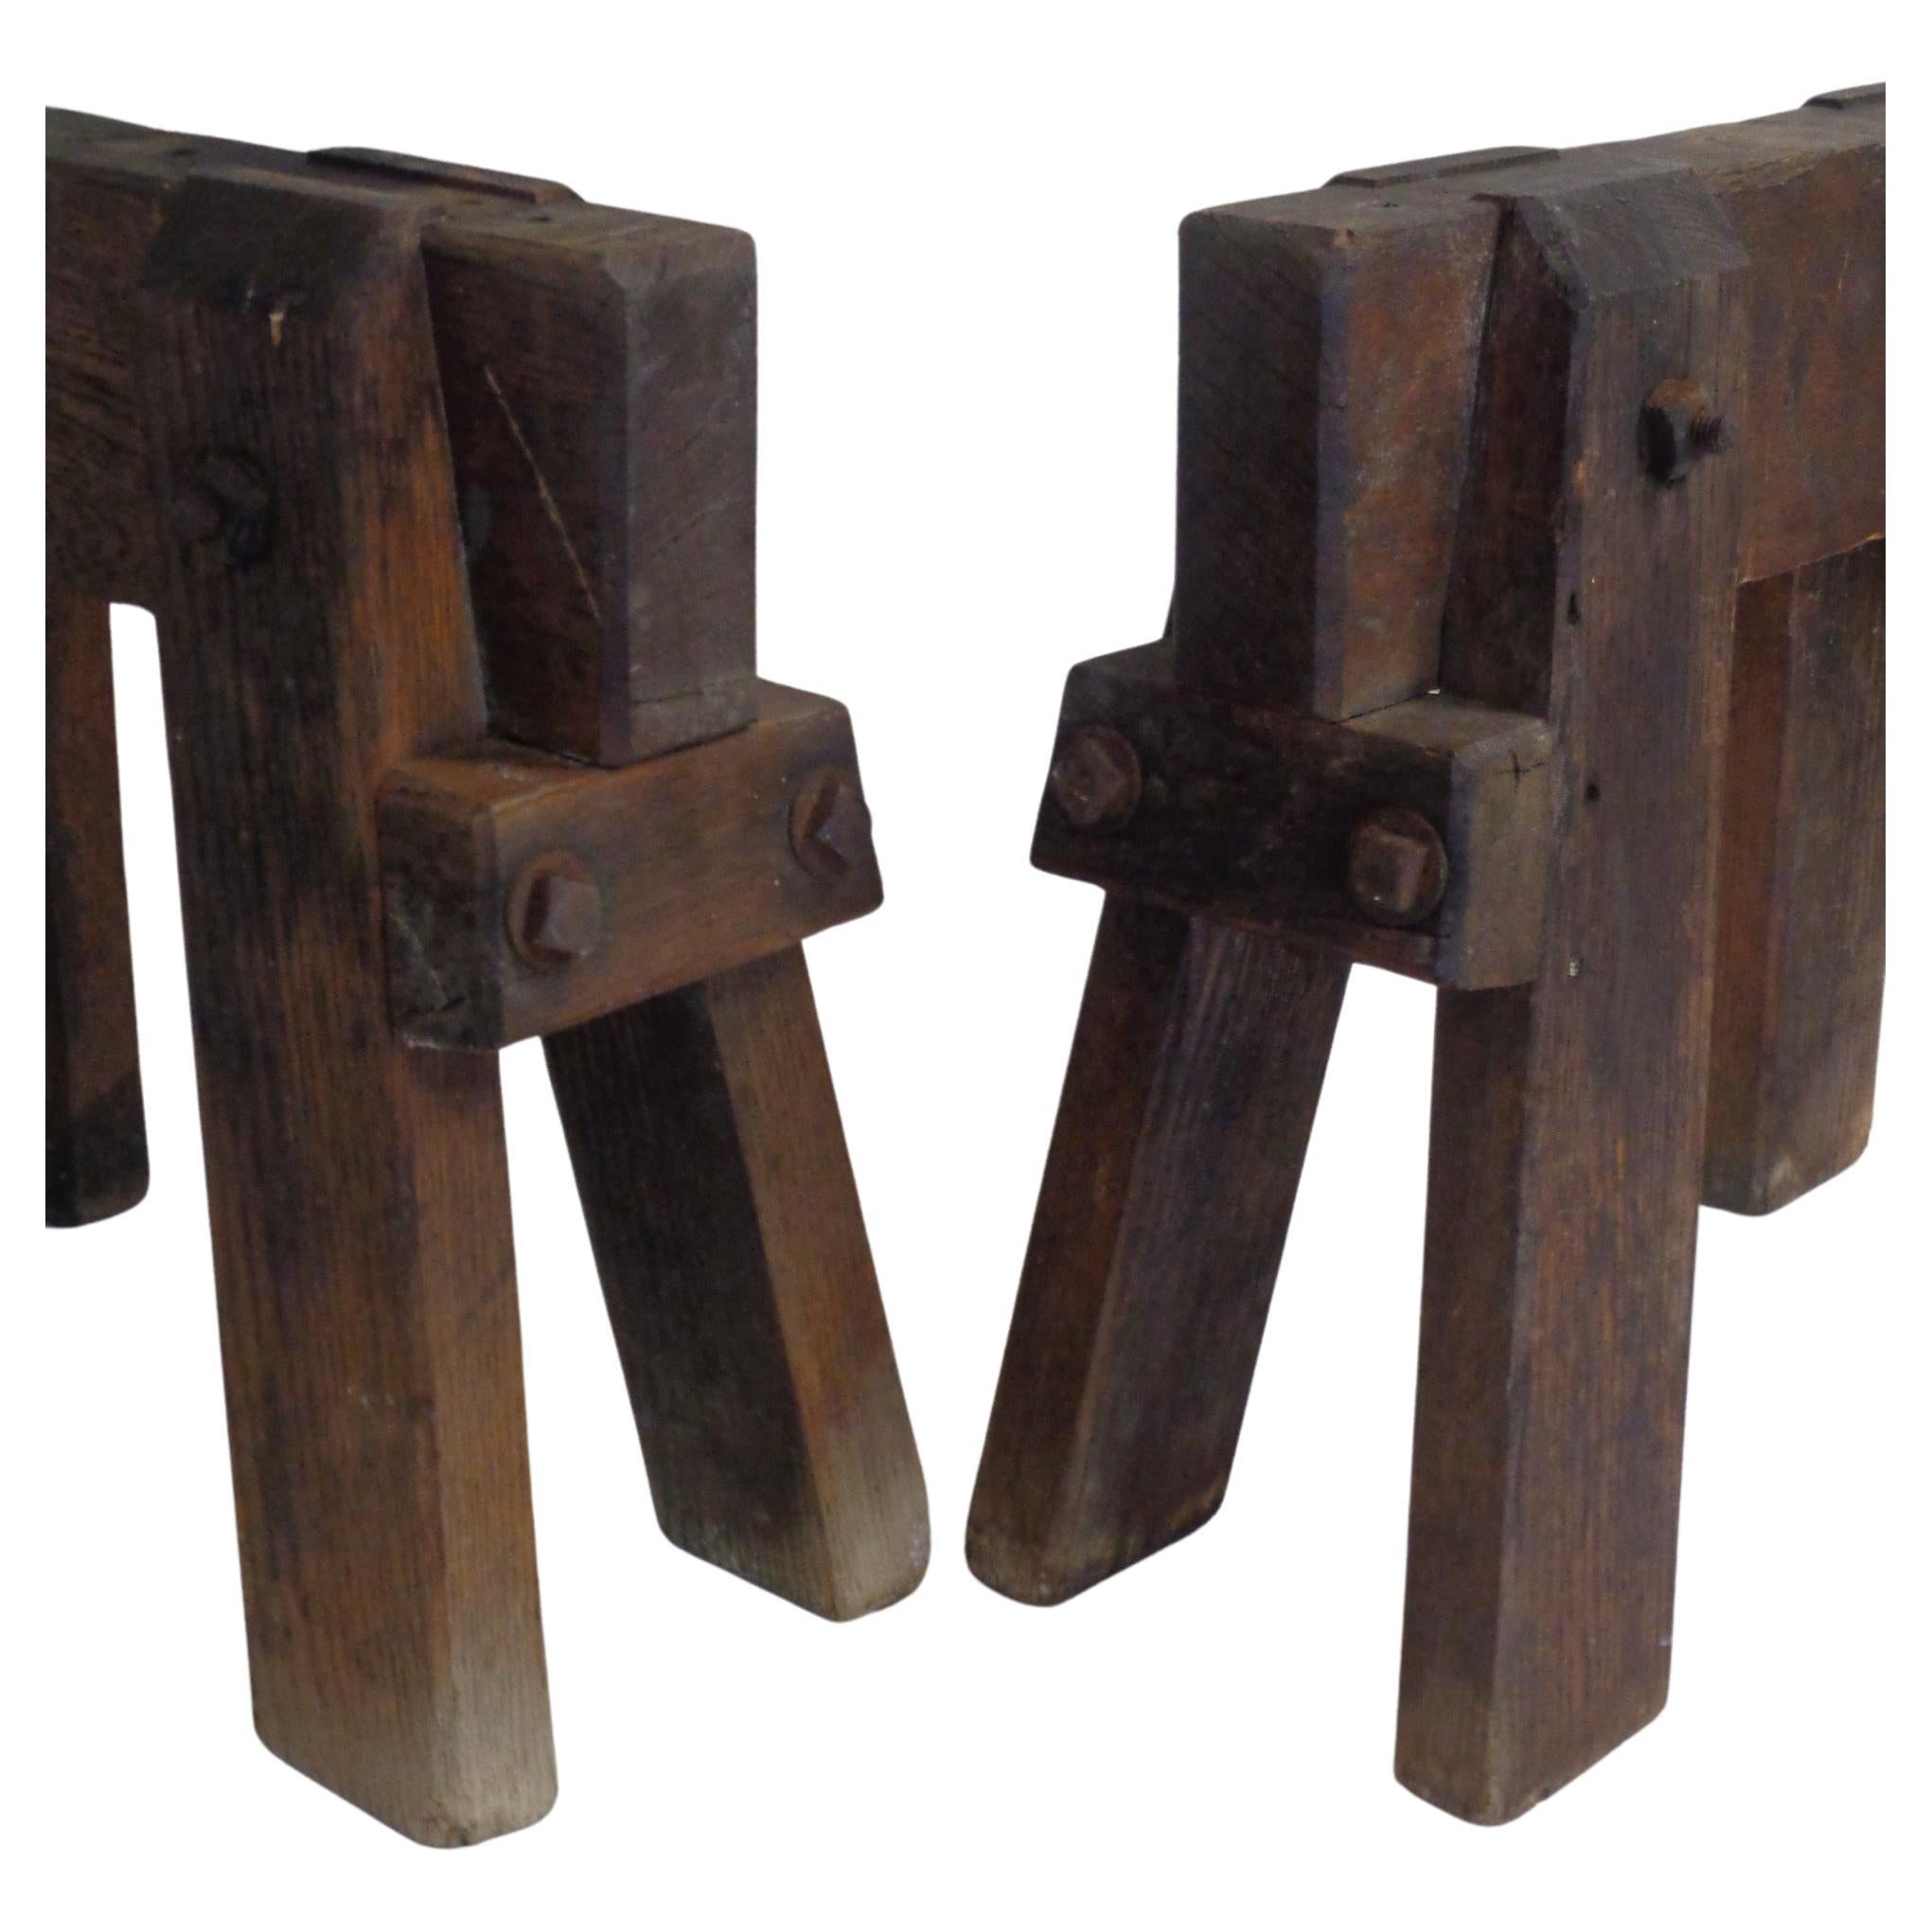 Une belle paire d'anciens chevalets de stéréotomie miniatures en chêne massif (utilisés à l'origine pour couper des solides tridimensionnels en formes particulières - pierre / maçonnerie / charpenterie) avec de grands boulons en fer / boiserie